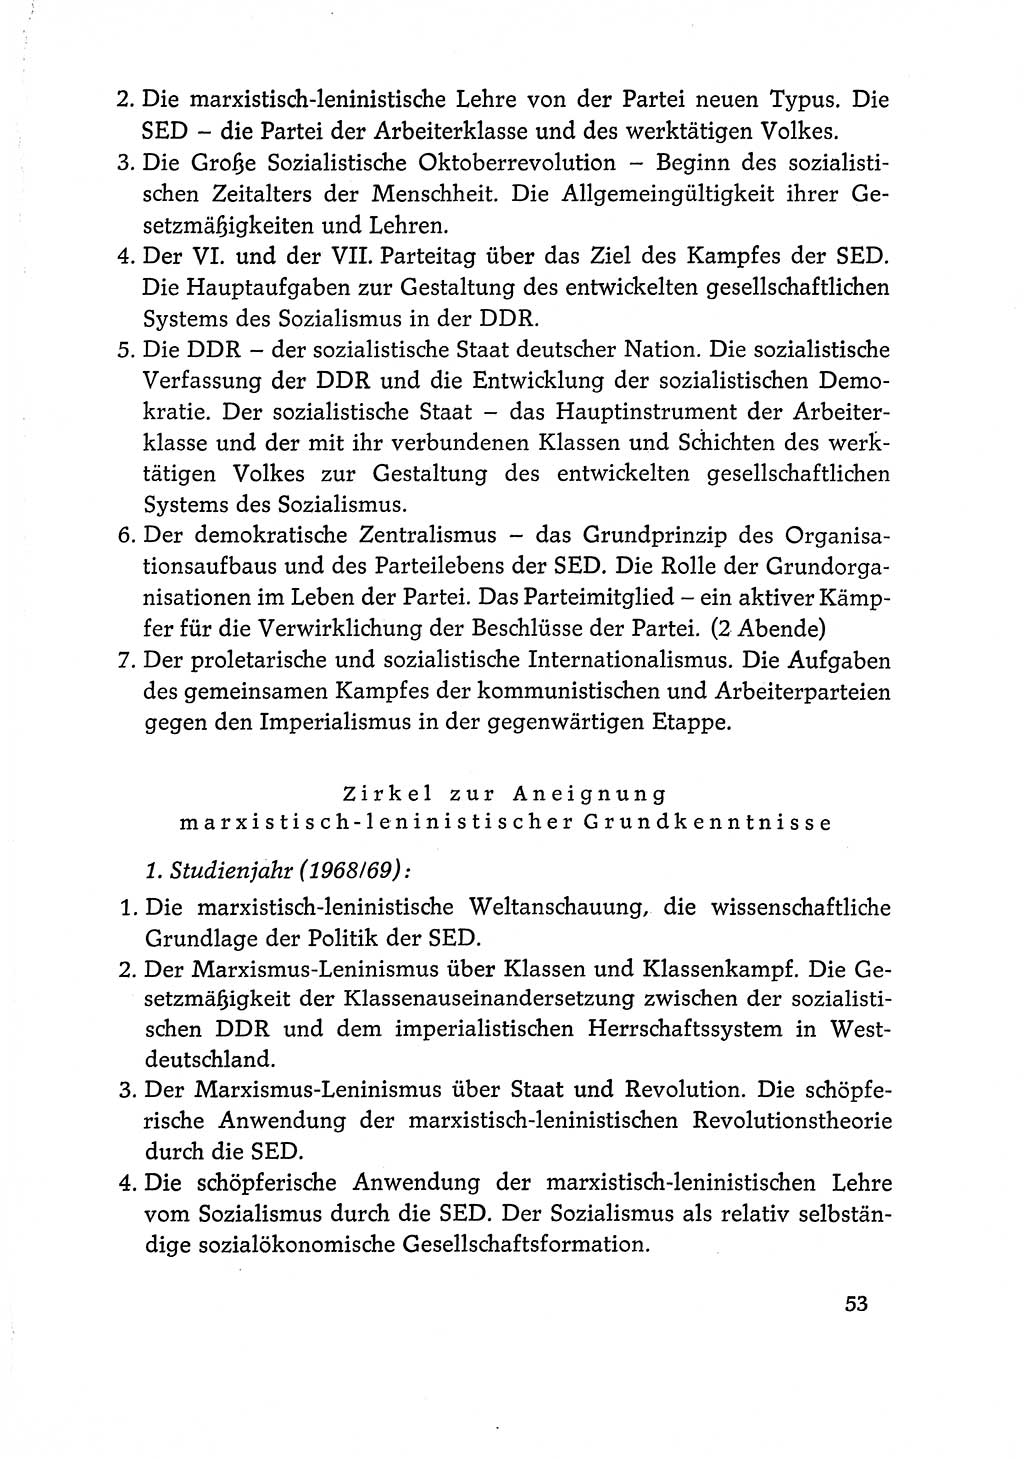 Dokumente der Sozialistischen Einheitspartei Deutschlands (SED) [Deutsche Demokratische Republik (DDR)] 1968-1969, Seite 53 (Dok. SED DDR 1968-1969, S. 53)